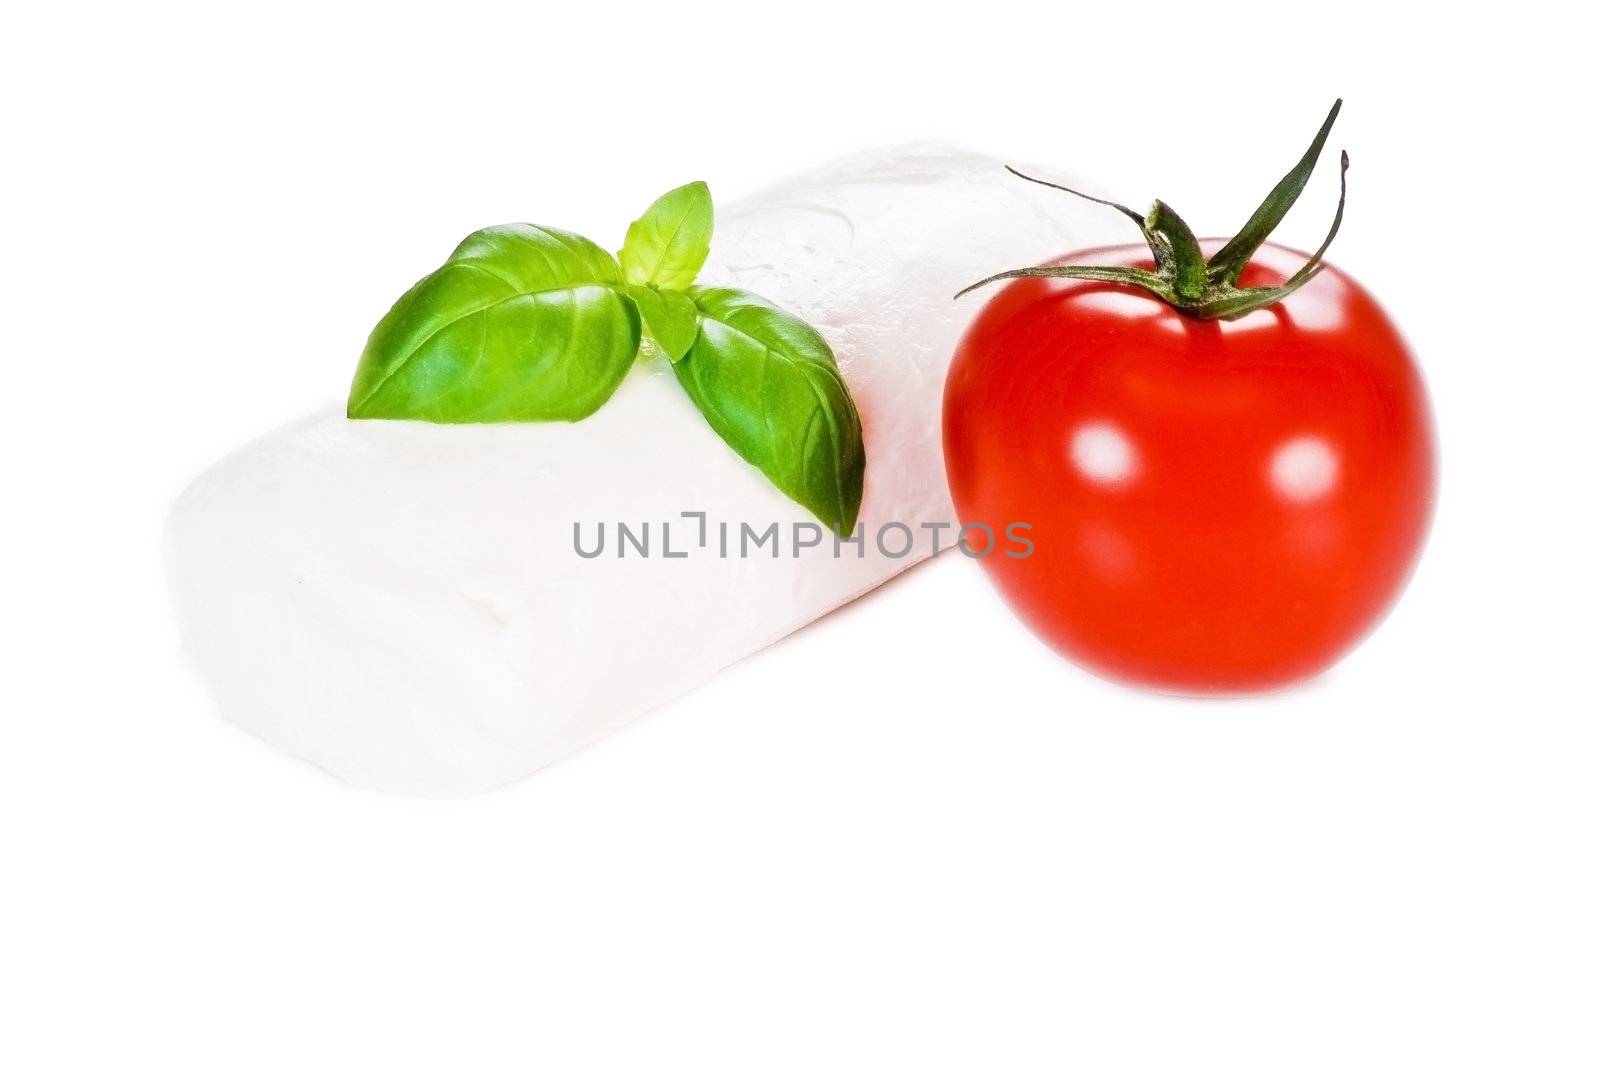 Tomato, basil and mozzarella by caldix